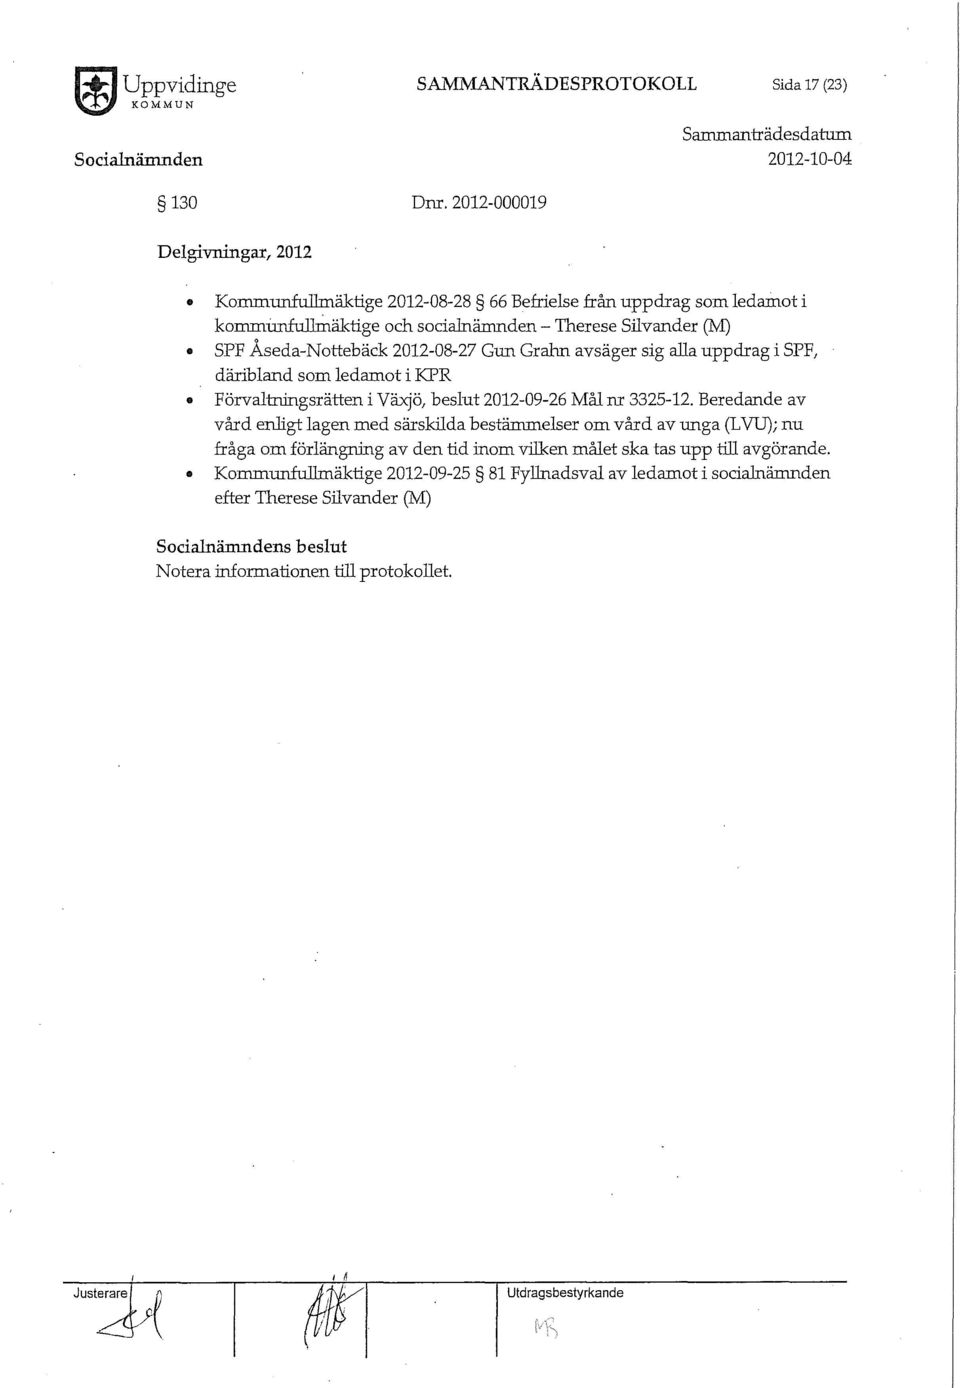 Åseda-Nottebäck 2012-08-27 Gun Gralm avsäger sig alla uppdrag i SPF, däribland som ledamot i KPR Förvalt:nmgsrätten i Växjö, beslut 2012-09-26 Mål m 3325-12.